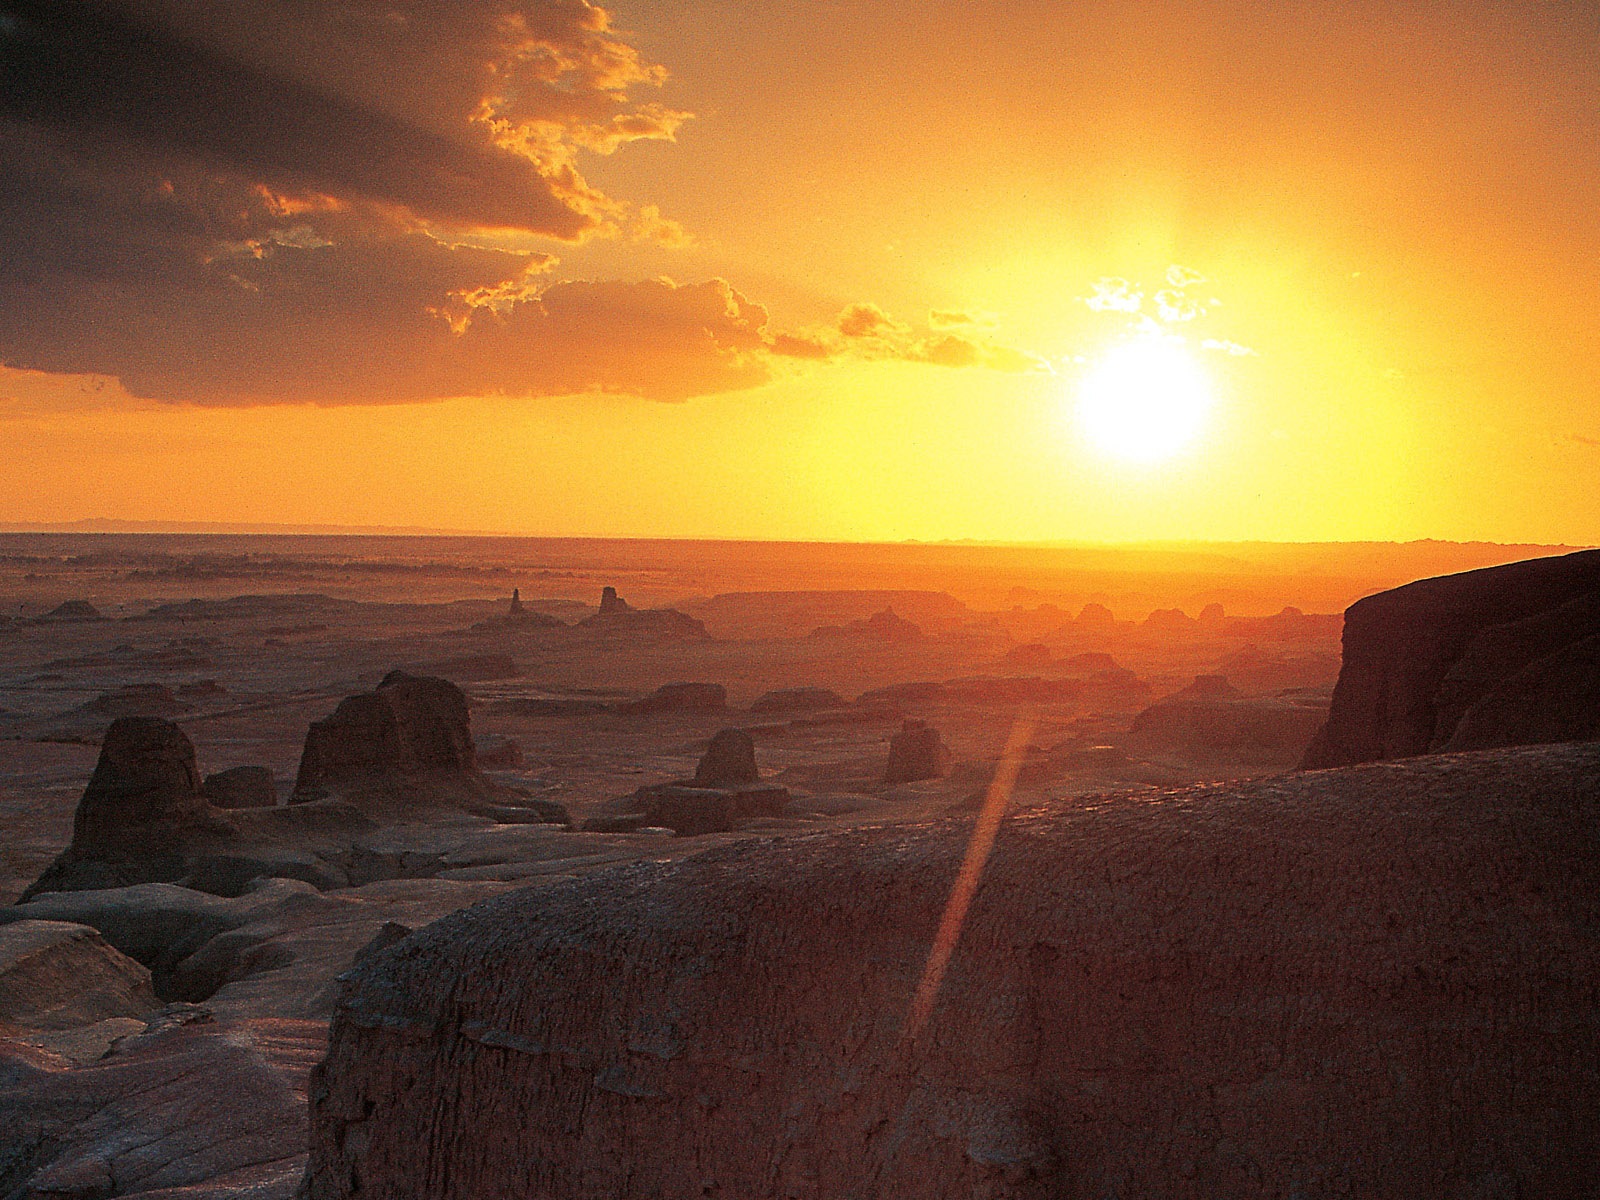 Les déserts chauds et arides, de Windows 8 fonds d'écran widescreen panoramique #12 - 1600x1200